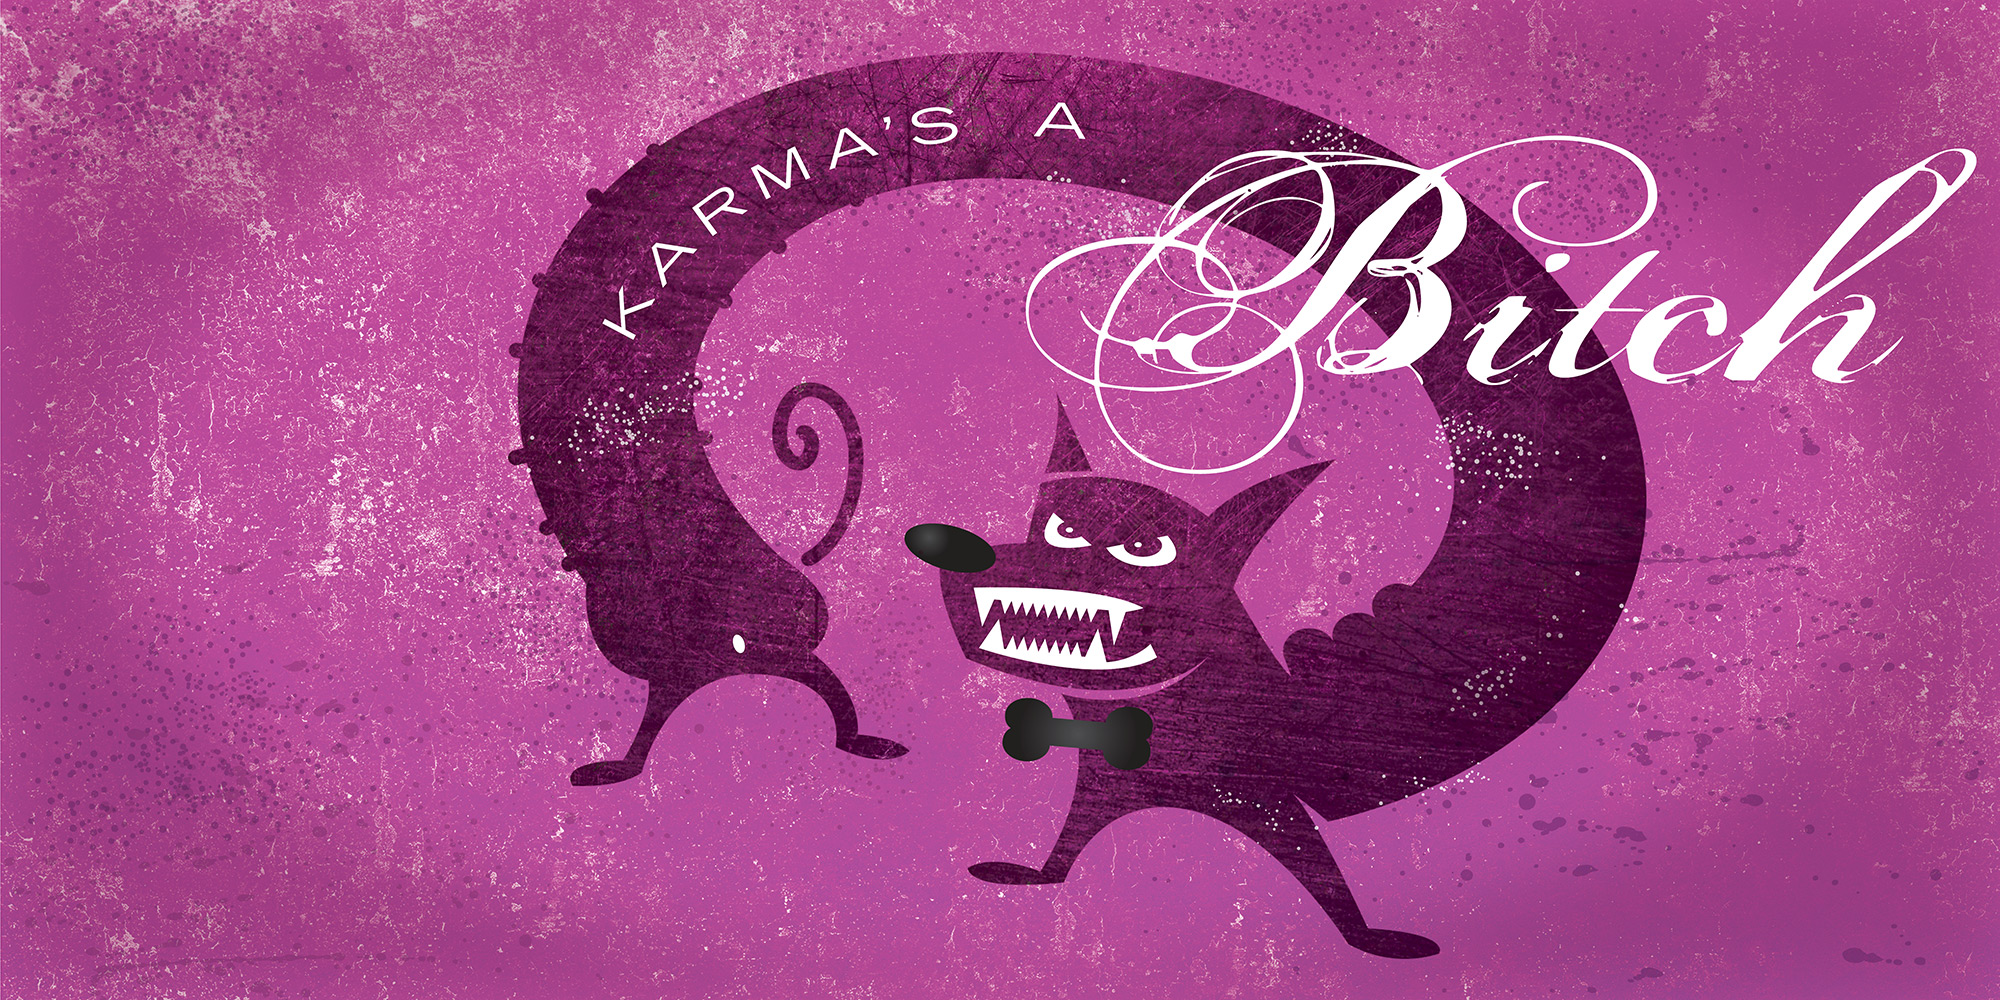 Jeff Kern design for "Karma's a Bitch"